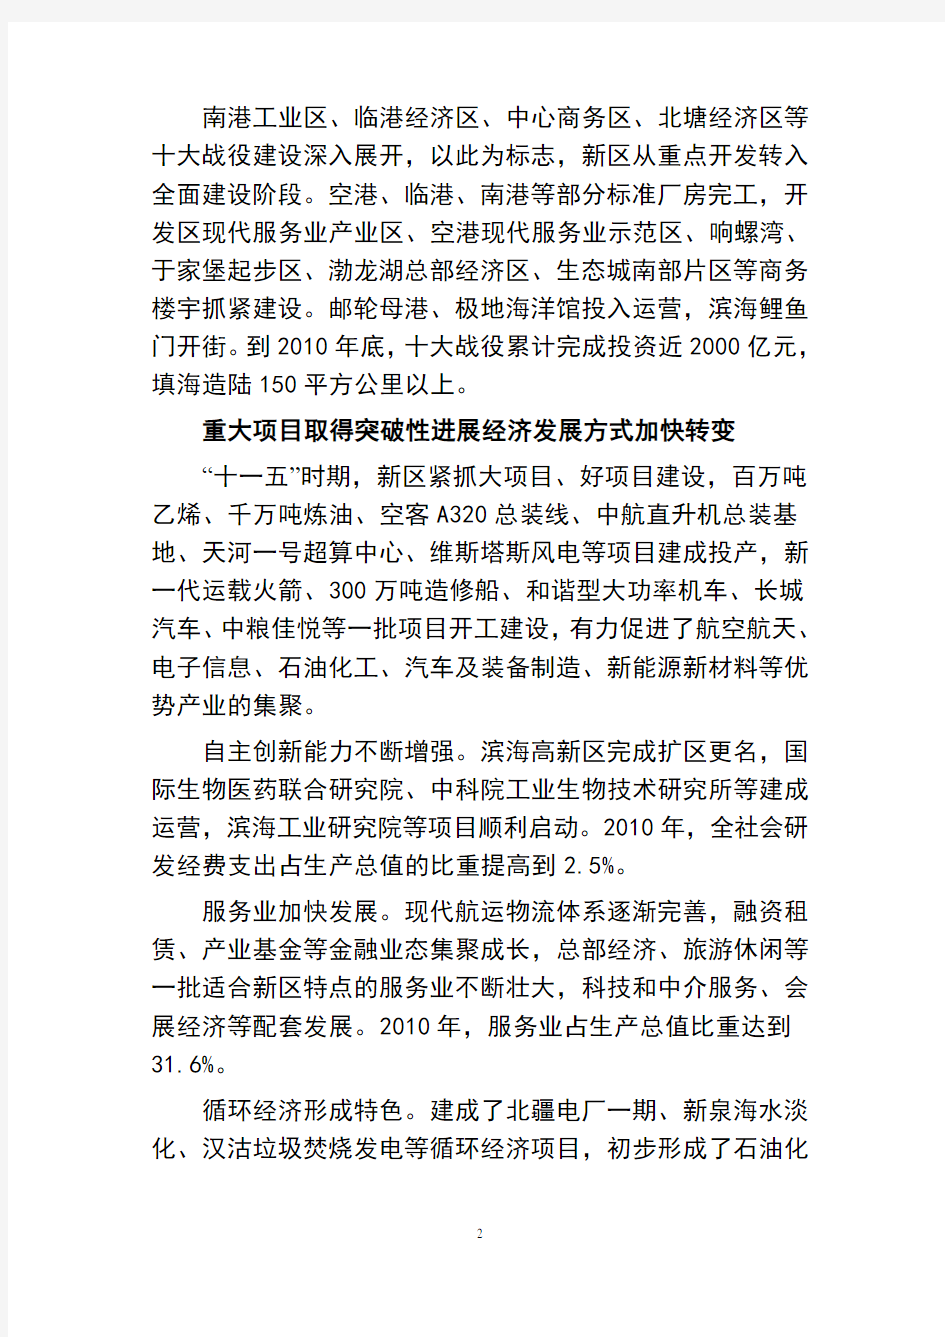 天津市滨海新区国民经济和社会发展第十二个五年规划纲要